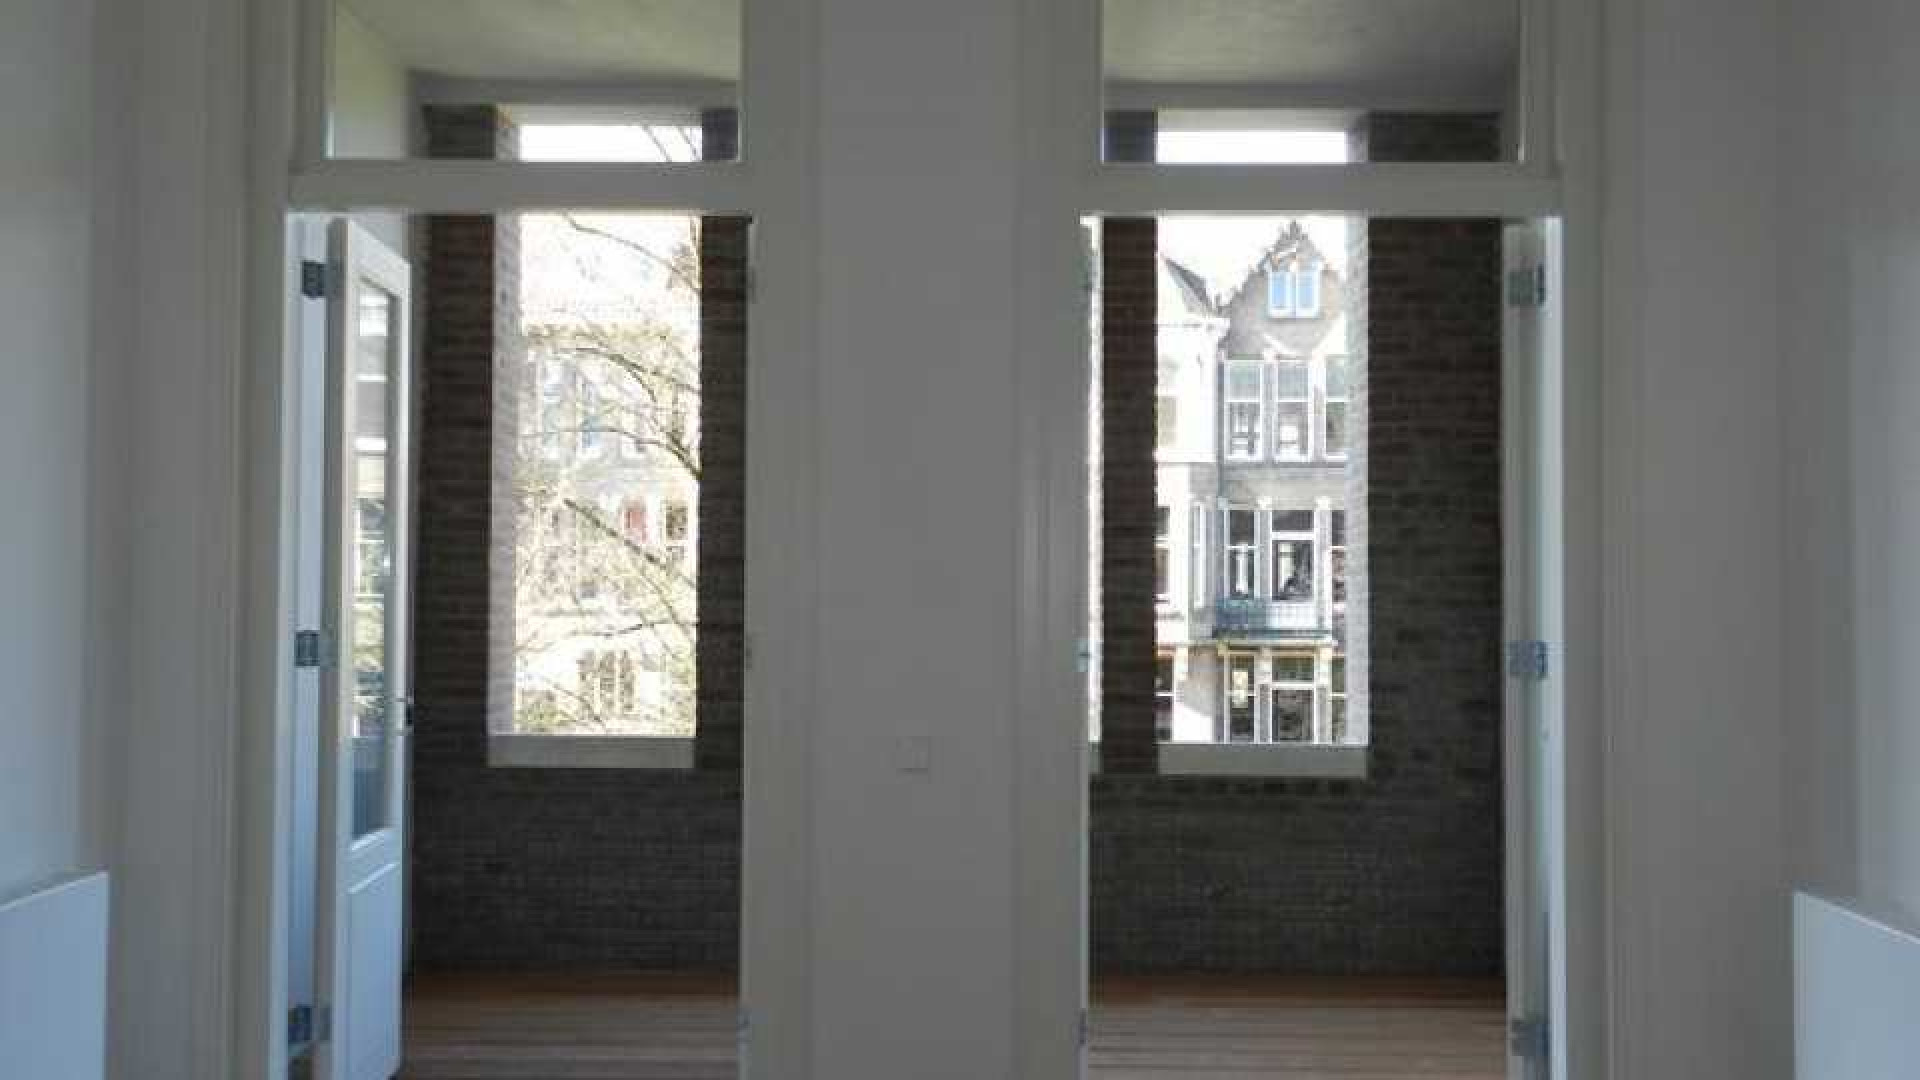 Frank Rijkaard gooit dit luxe appartement weer in de verhuur. Zie foto's